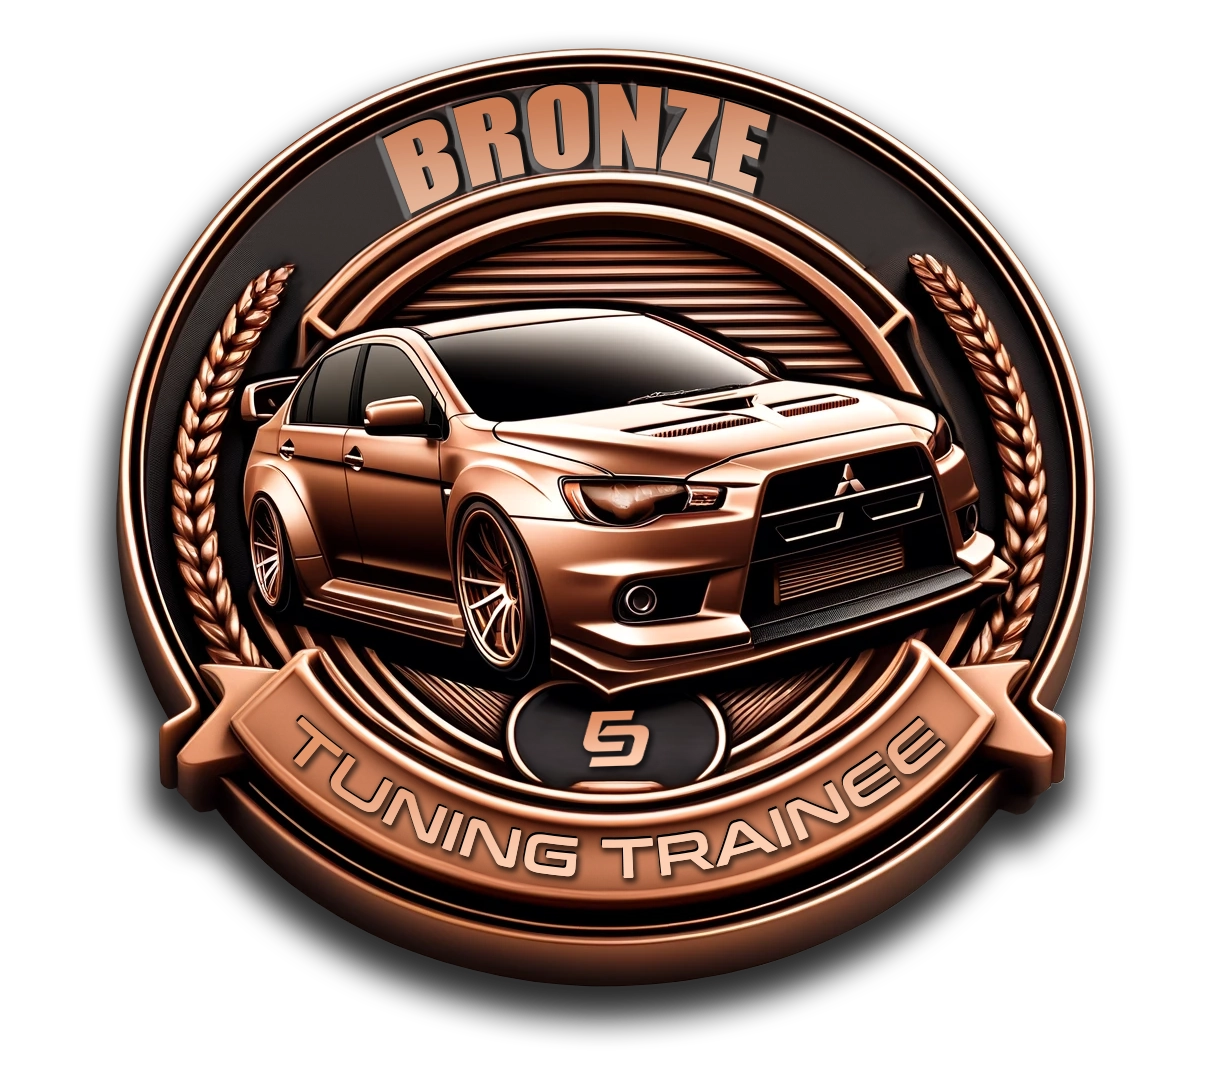 Tuning Trainee Badge - Bronze Affiliate